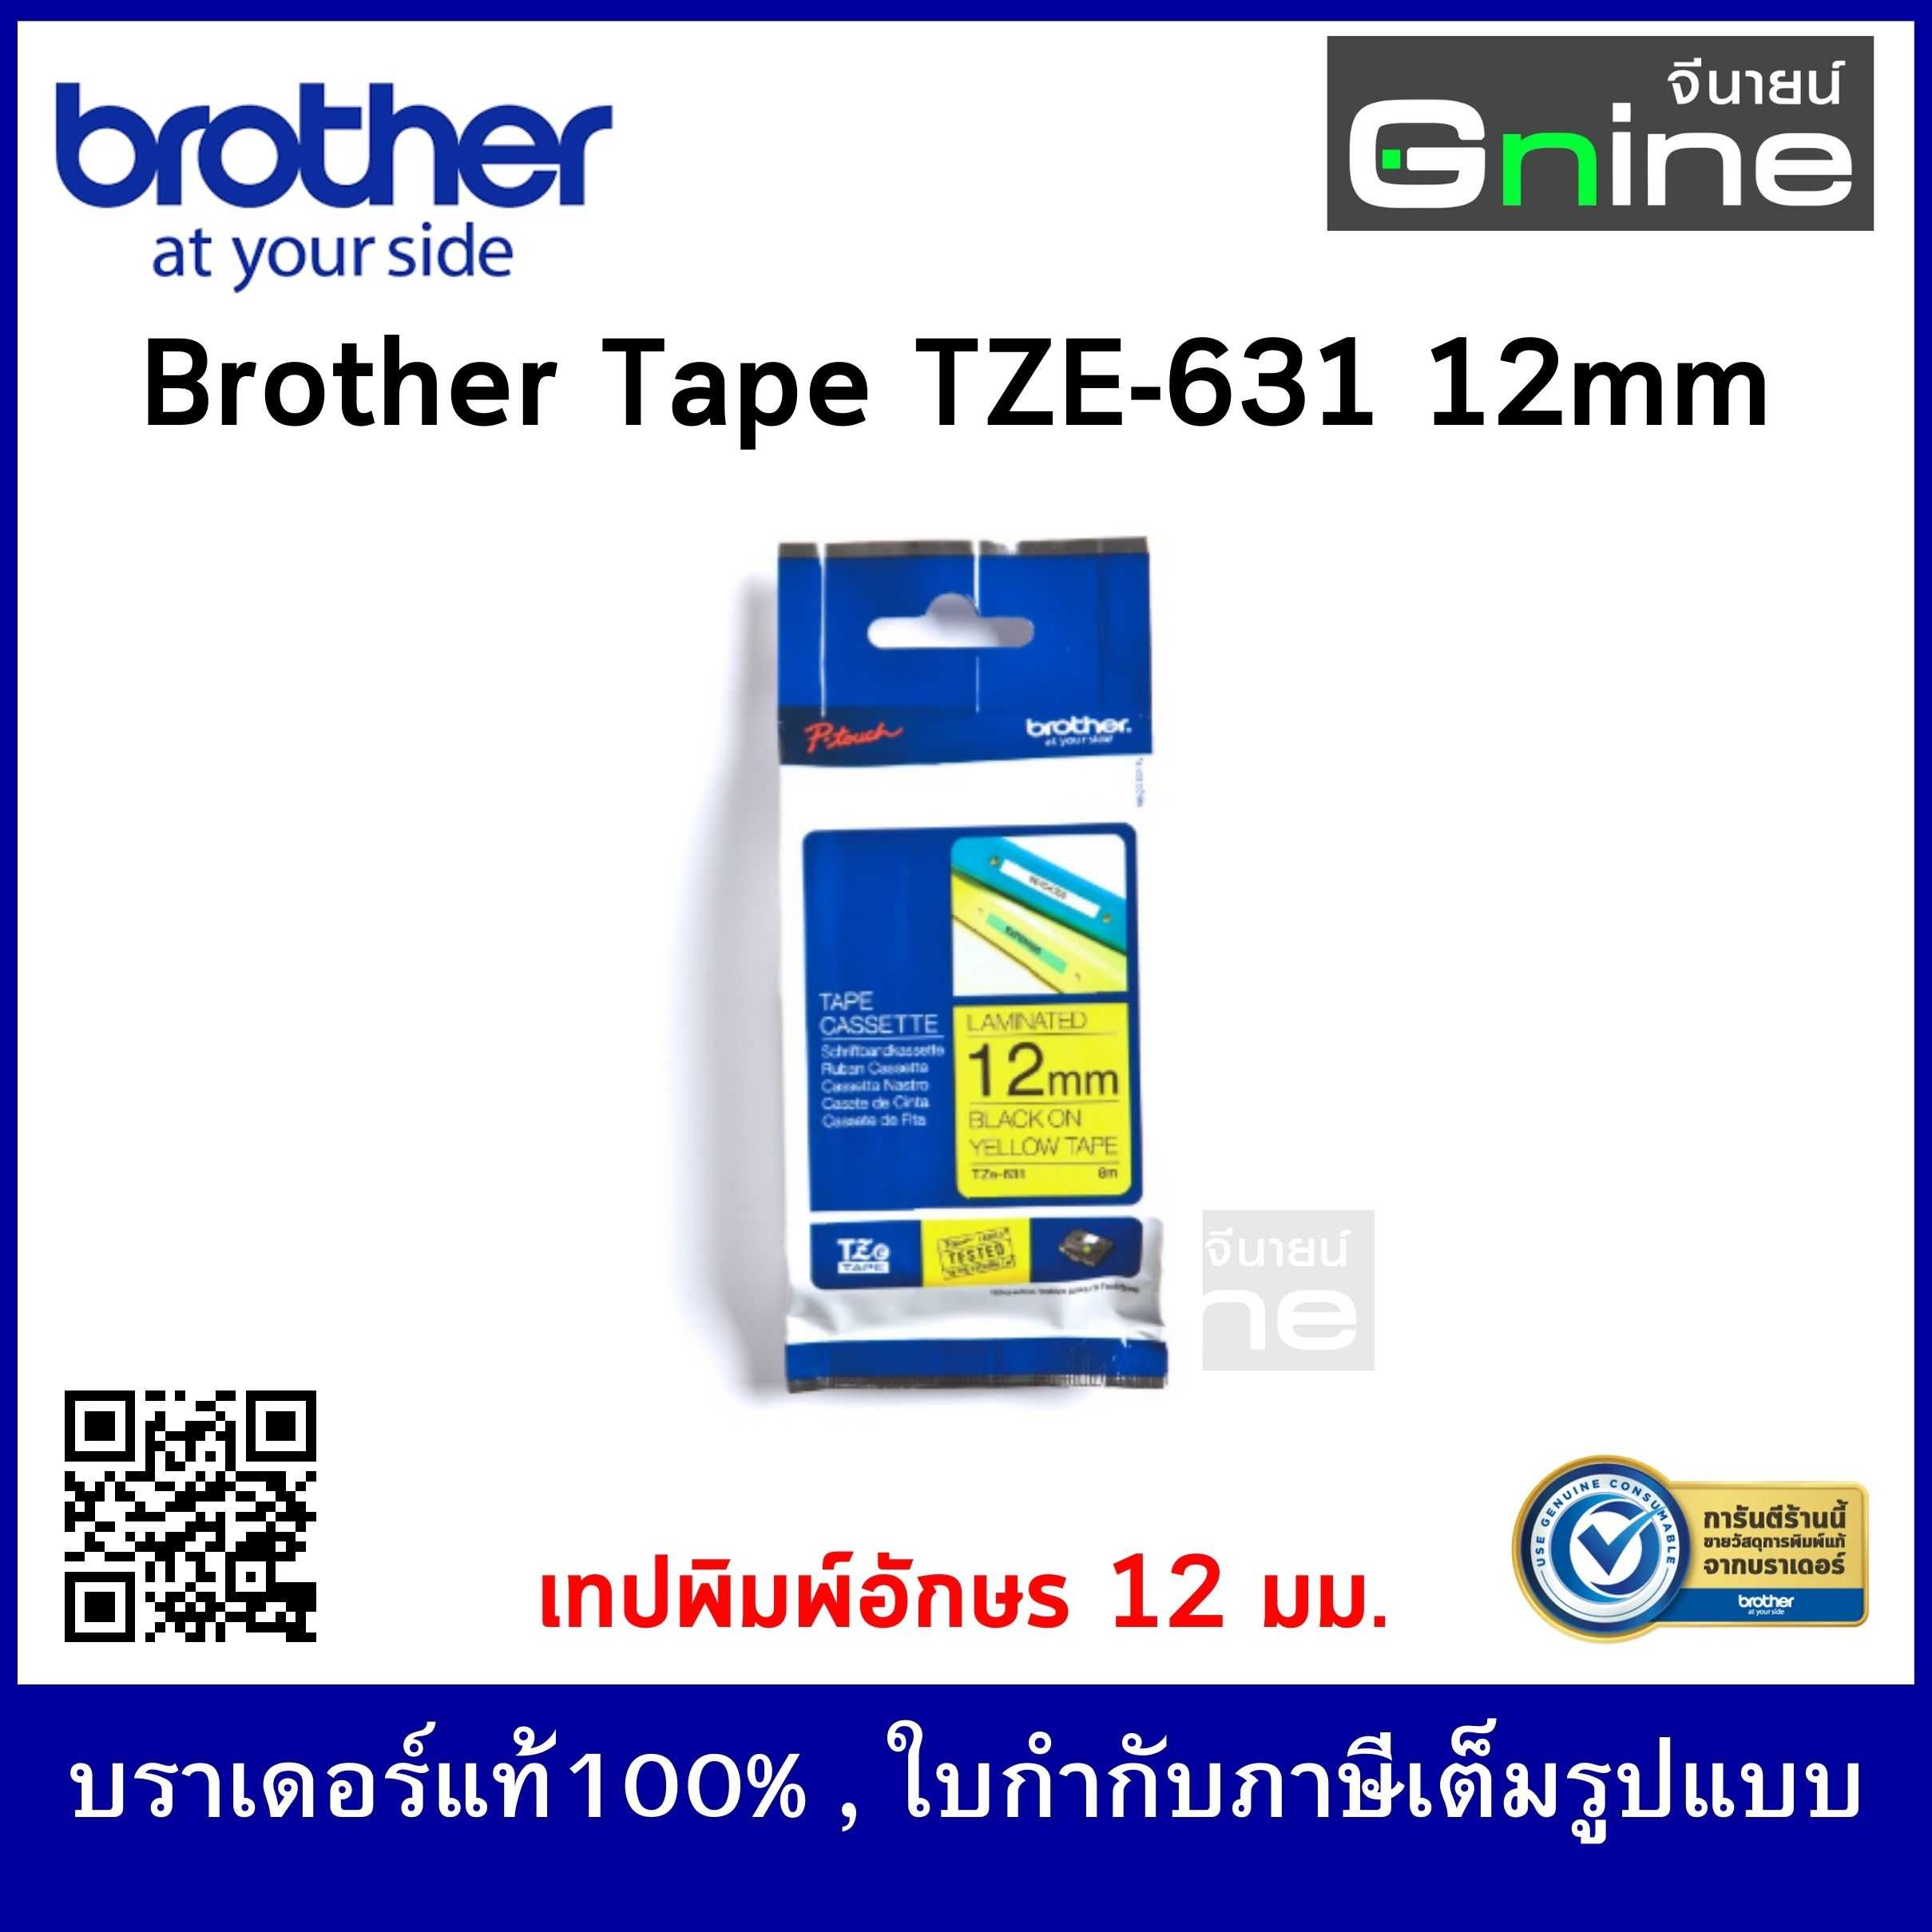 Brother Tape TZE-631 (เทปพิมพ์อักษรบราเดอร์ ขนาด 12 มม.)